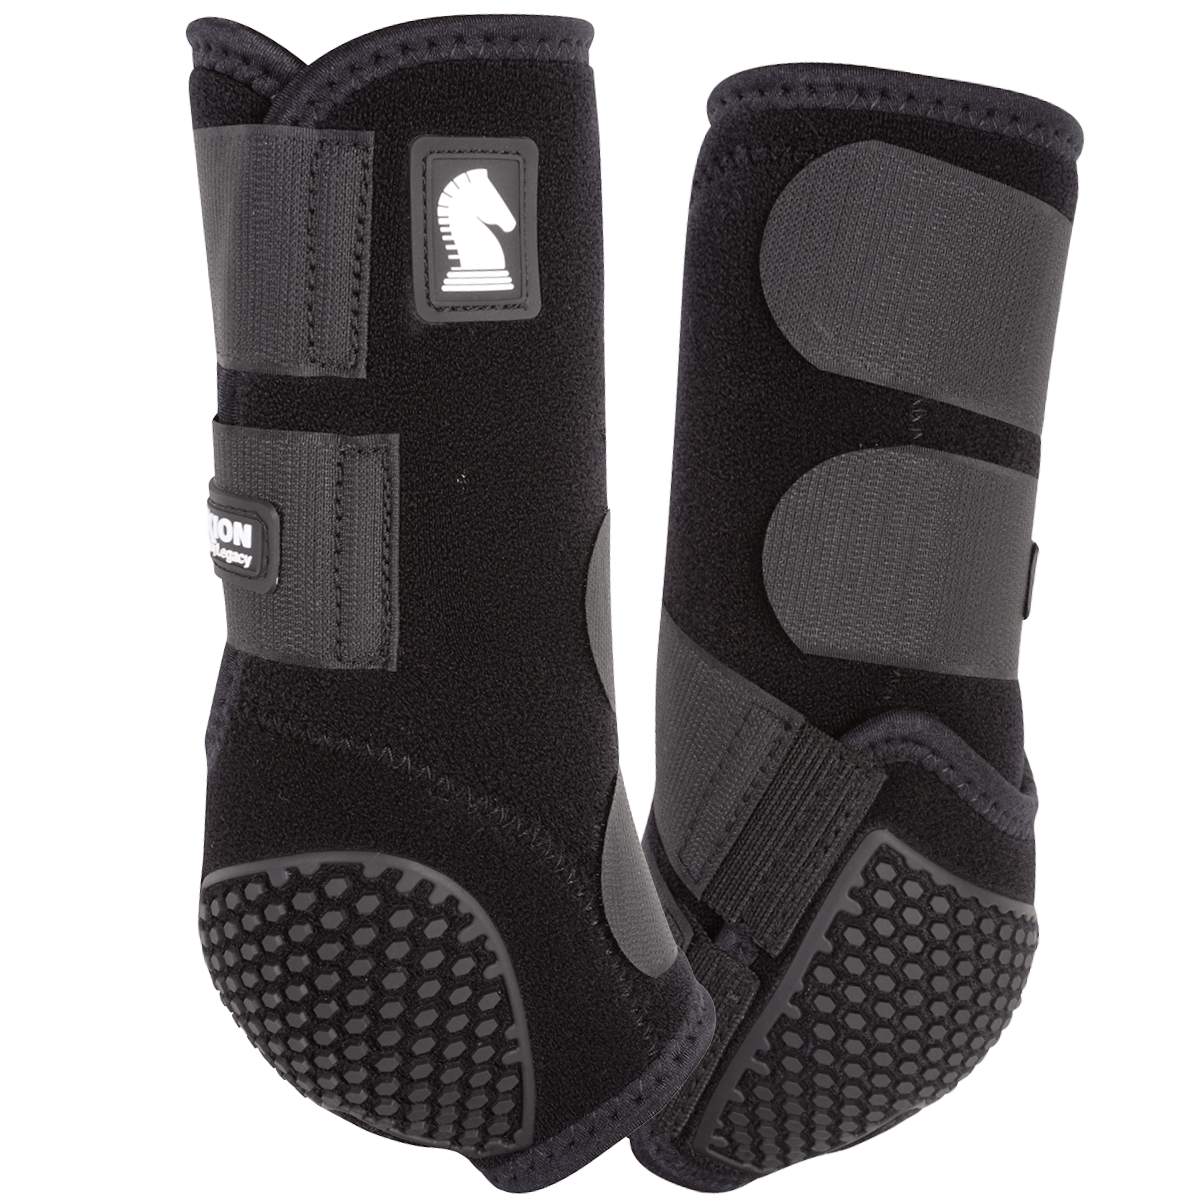 Black Flexion Splint Boots